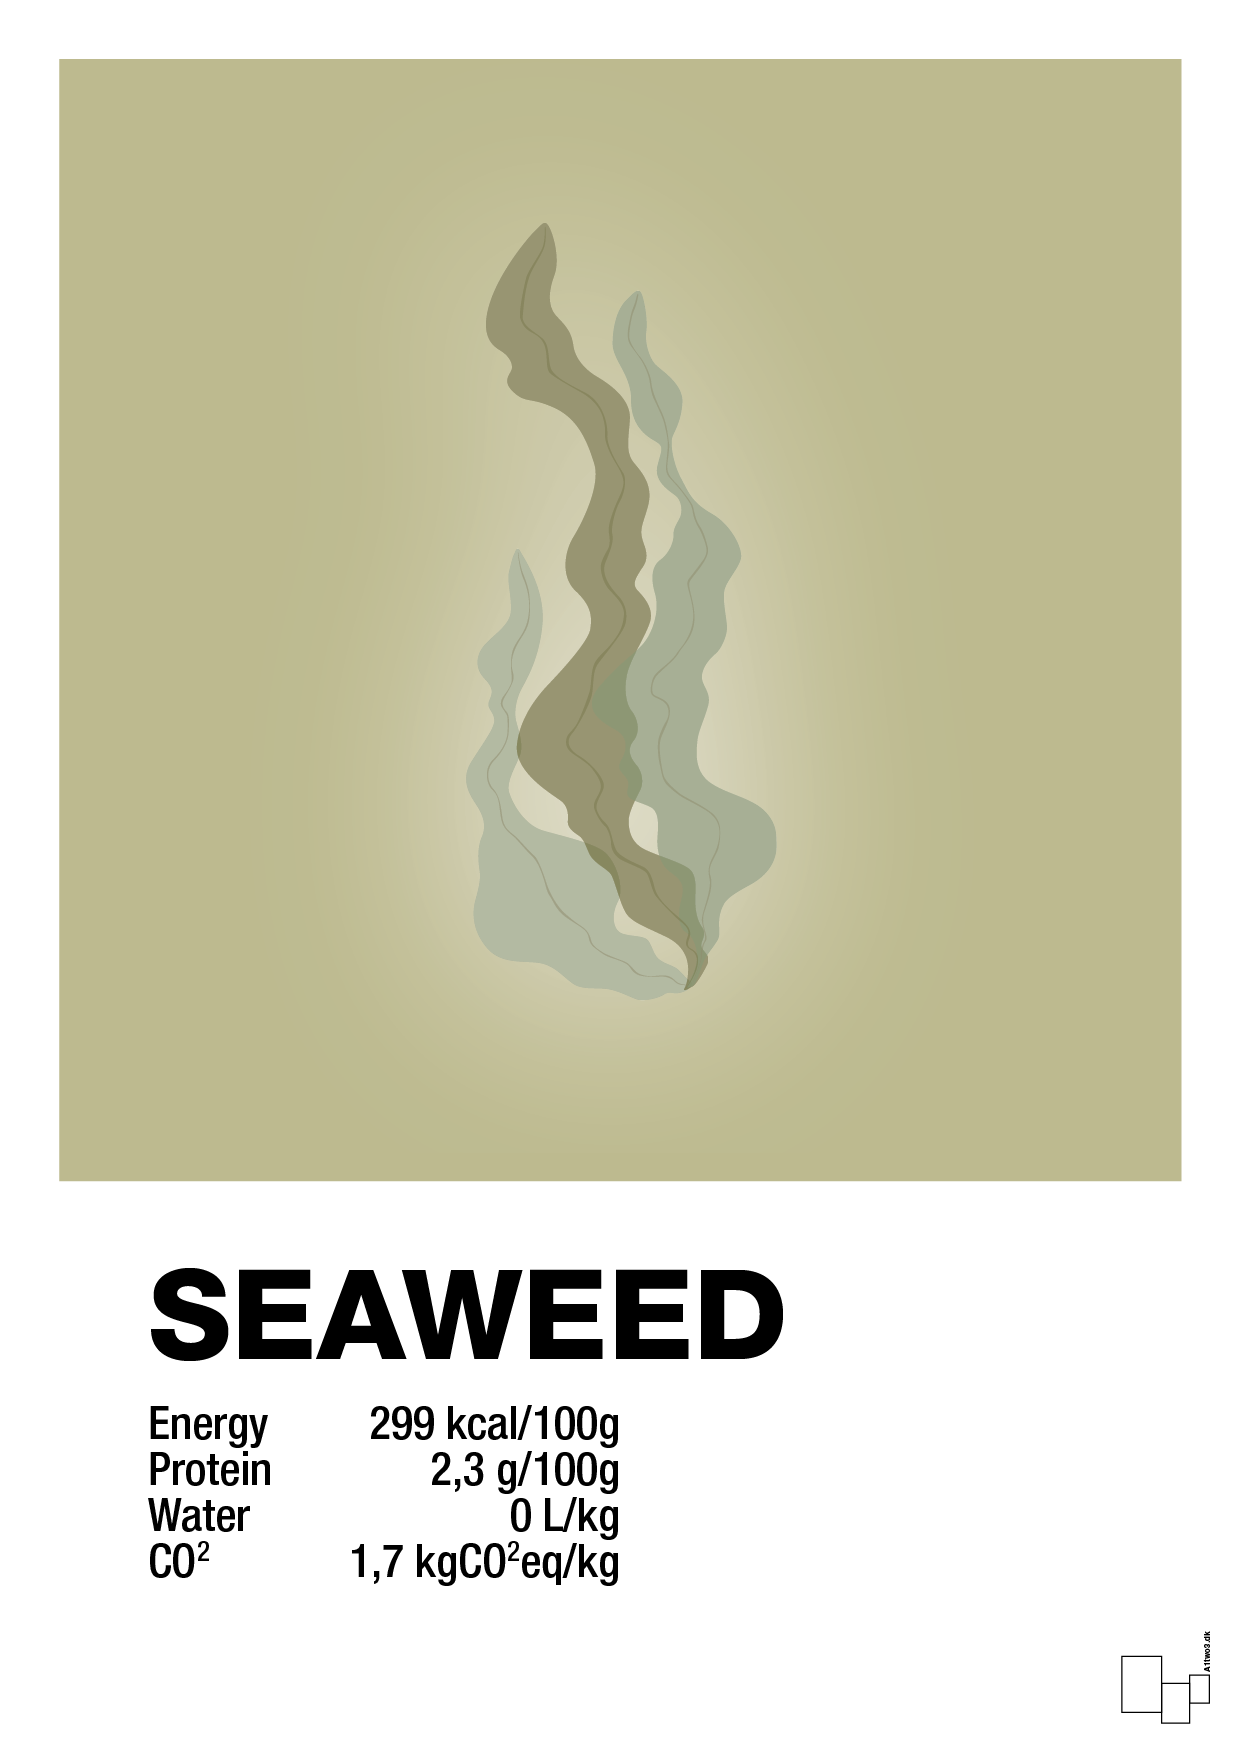 seaweed nutrition og miljø - Plakat med Mad & Drikke i Back to Nature